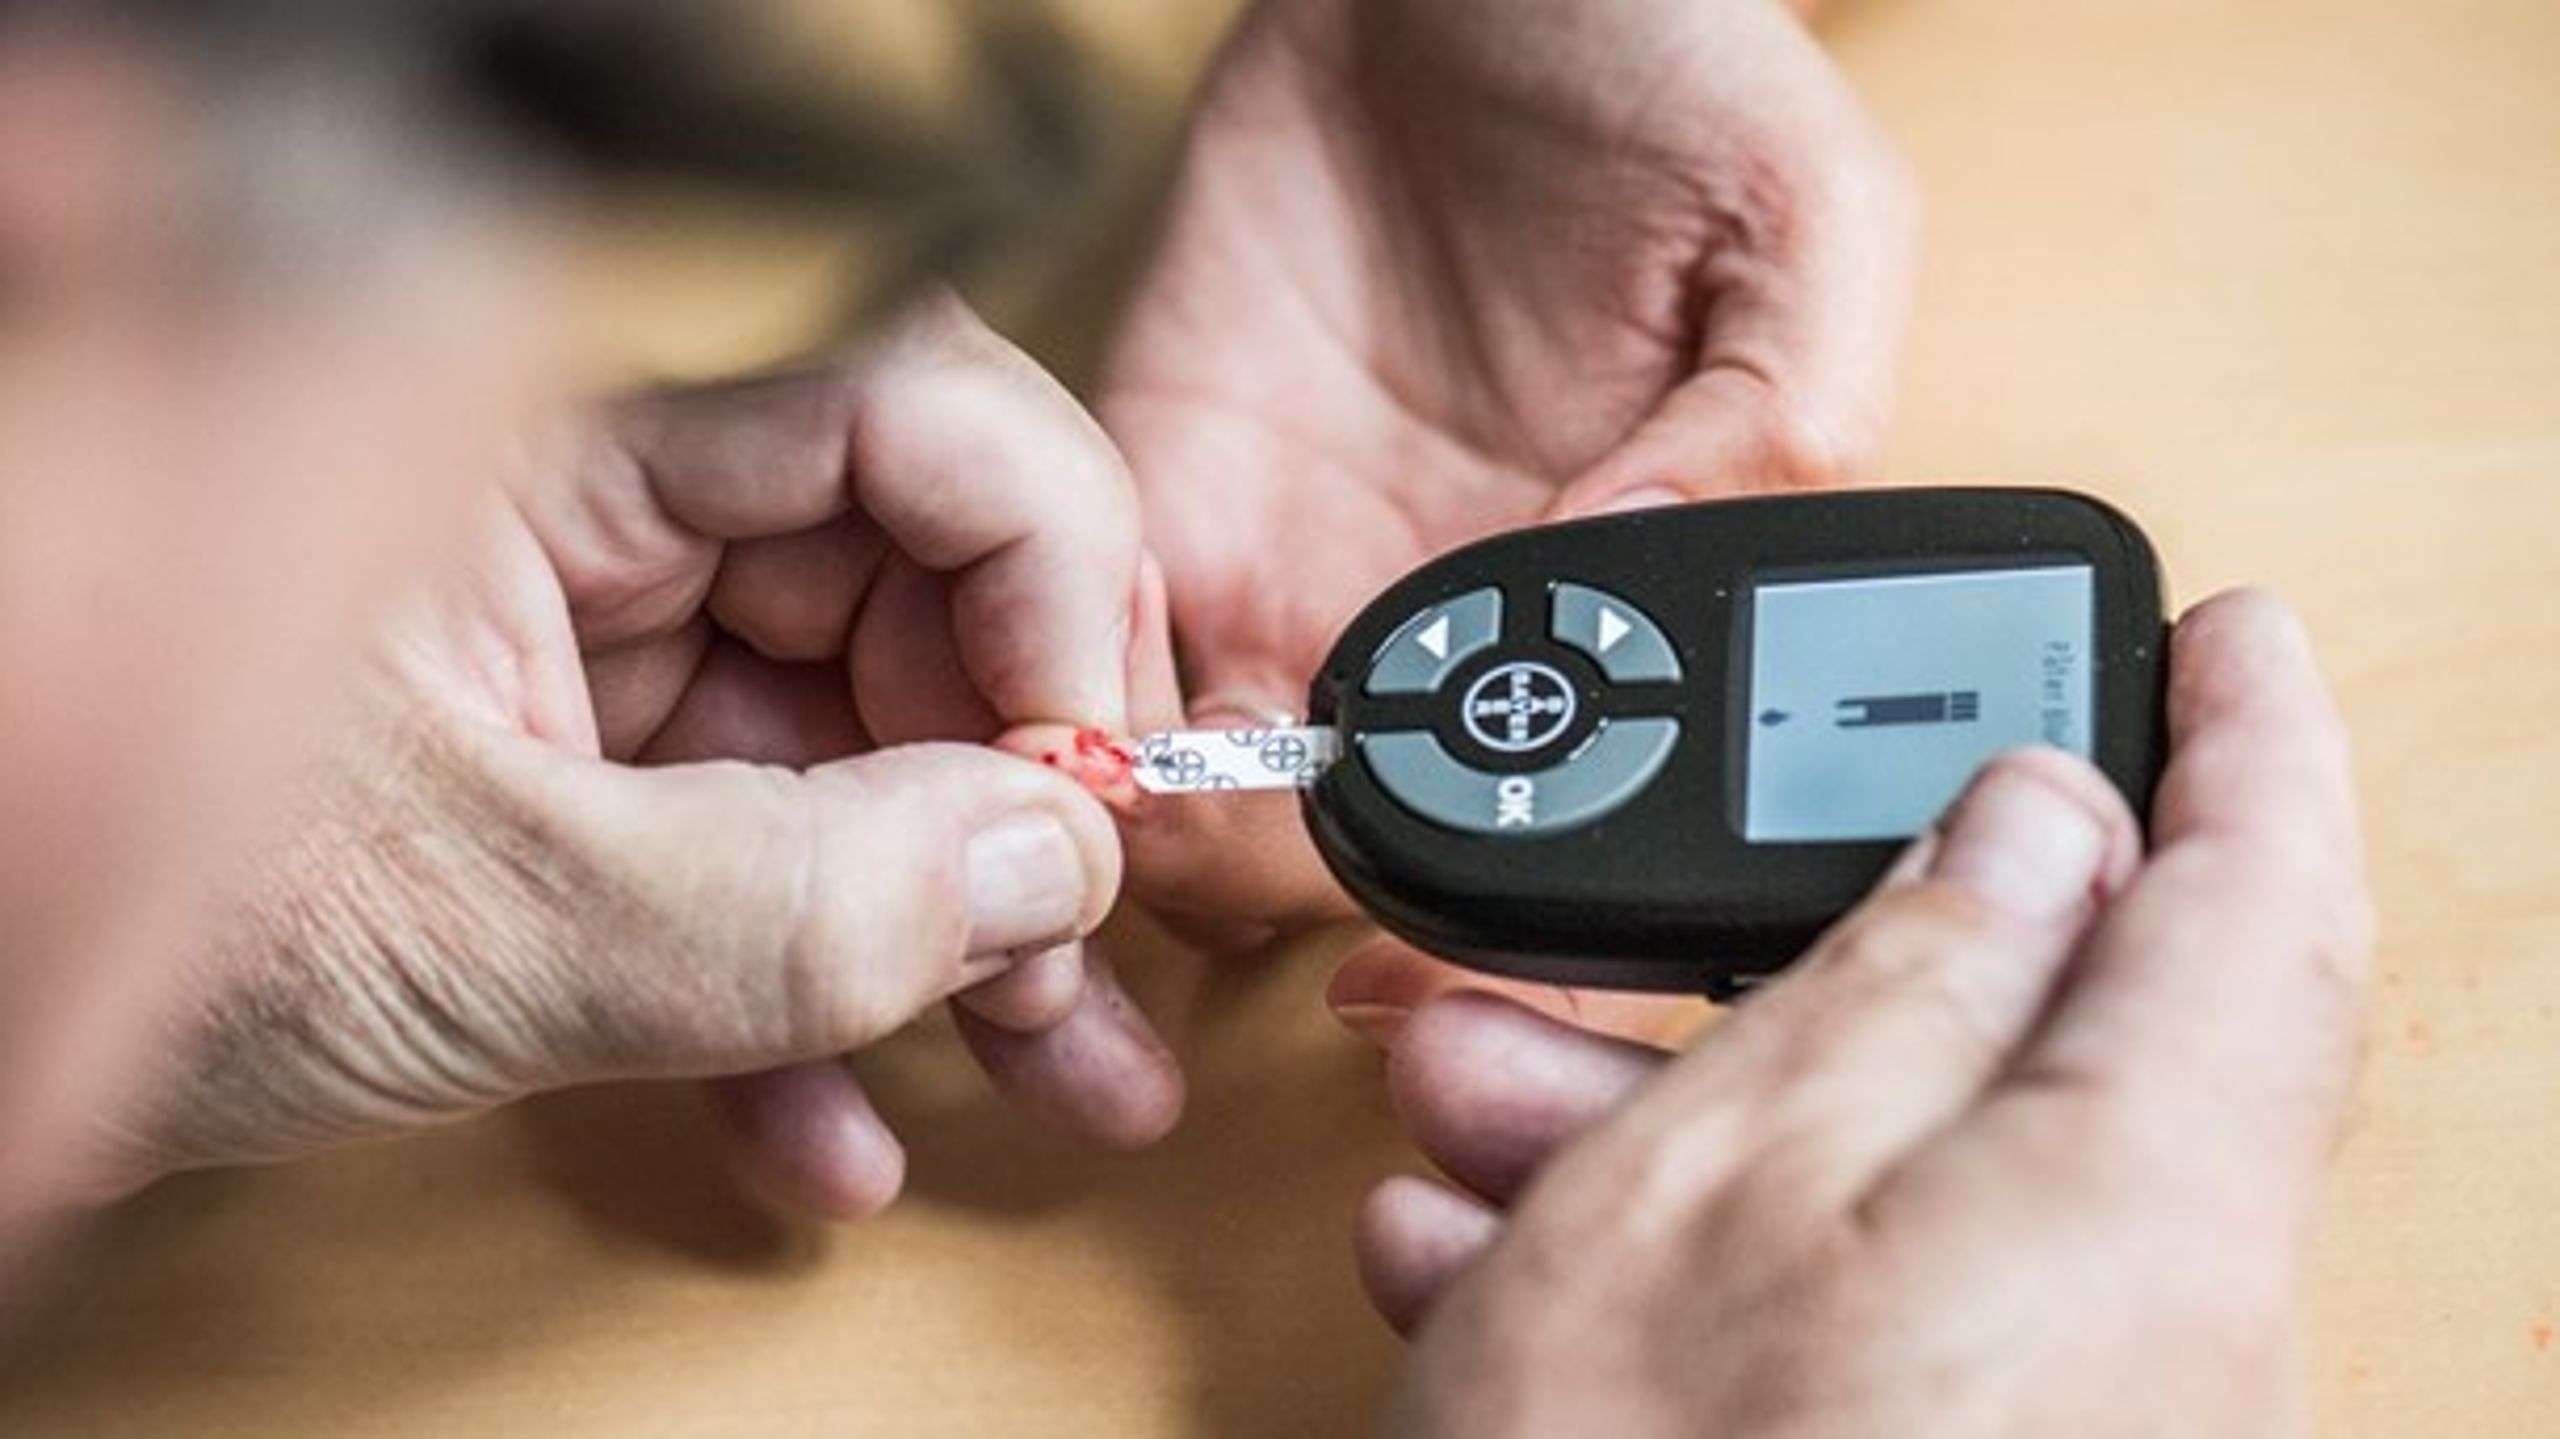 Overvågning af blodsukkeret er vigtigt i håndteringen af diabetessygdommen. Men borgere med sygdommen oplever problemer på hjælpemiddelområdet, mener Diabetesforeningen.